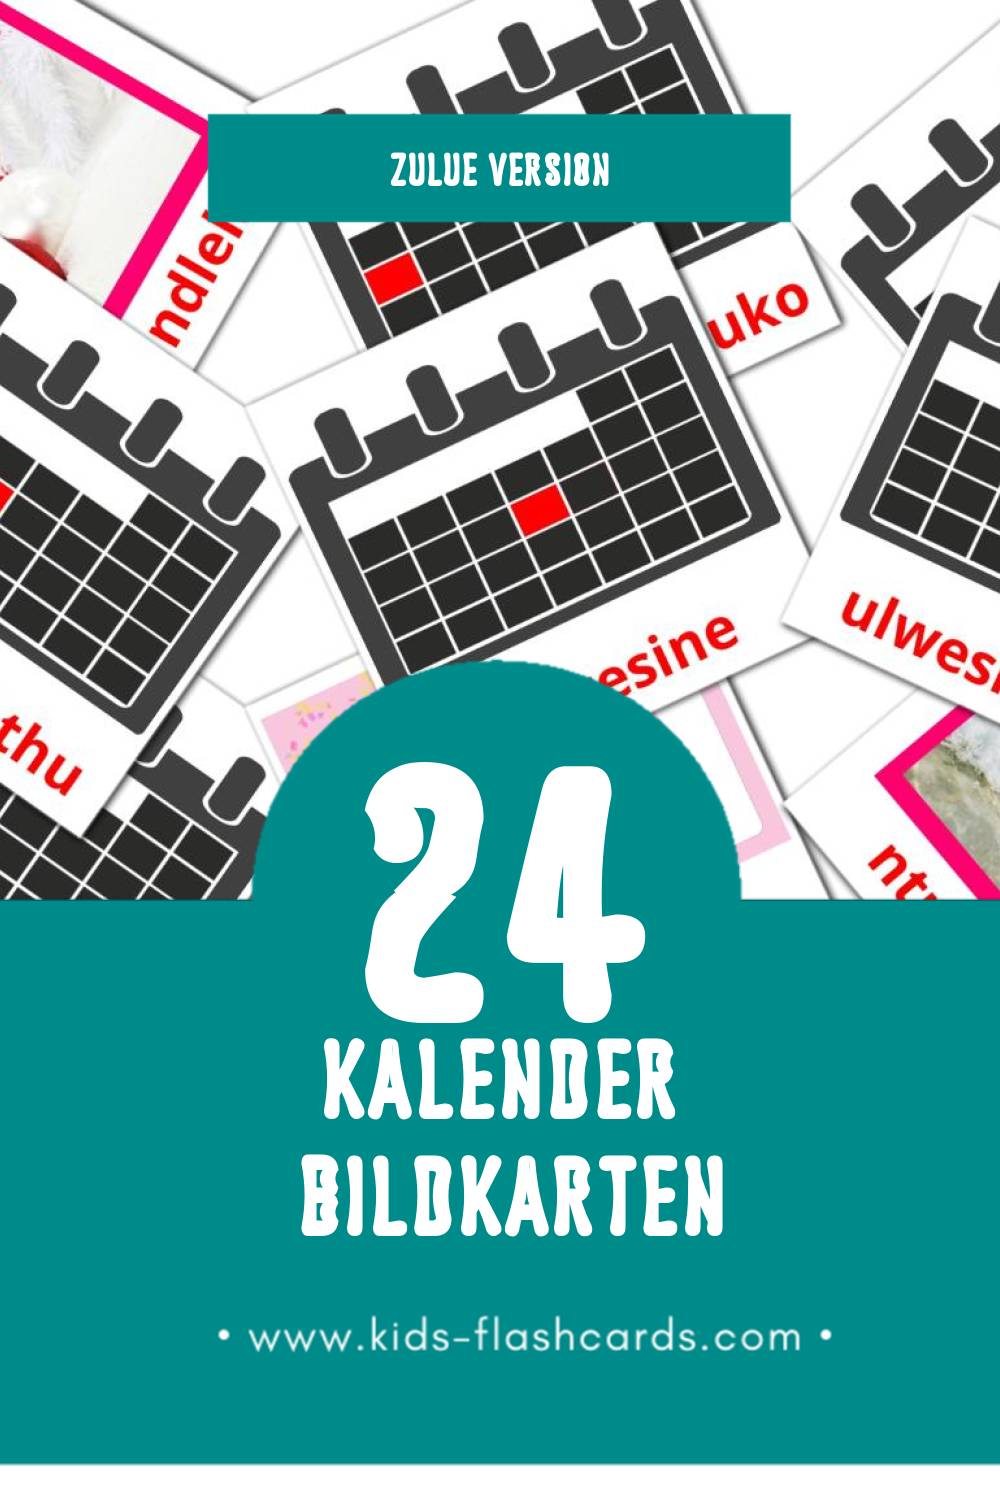 Visual Ikhalenda Flashcards für Kleinkinder (24 Karten in Zulu)